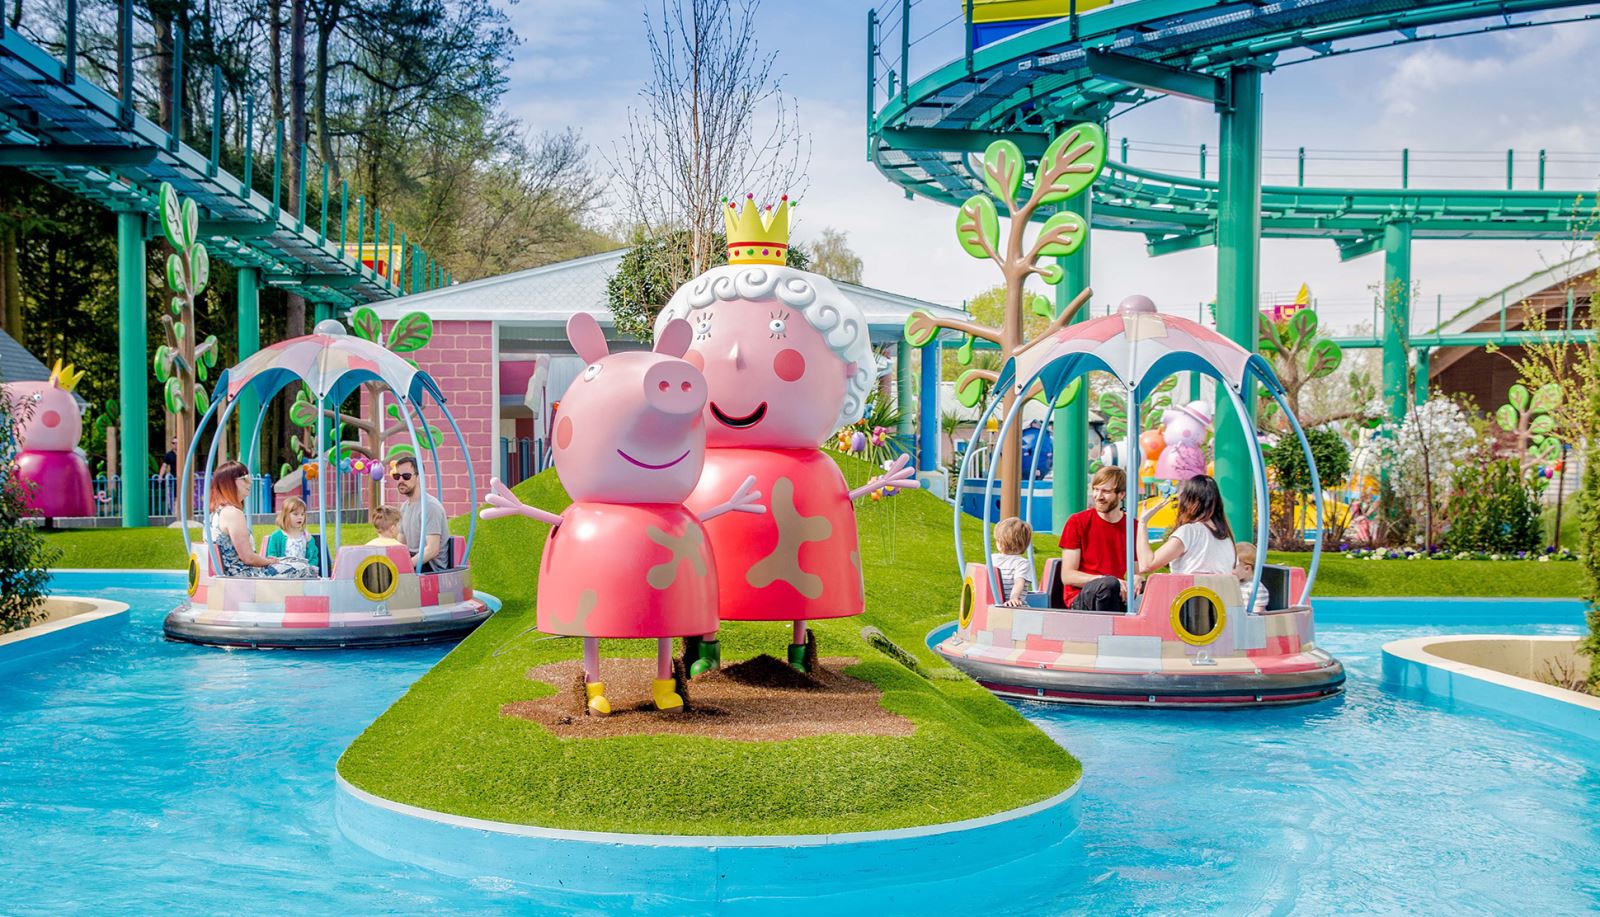 Peppa Pig World at Paultons Park